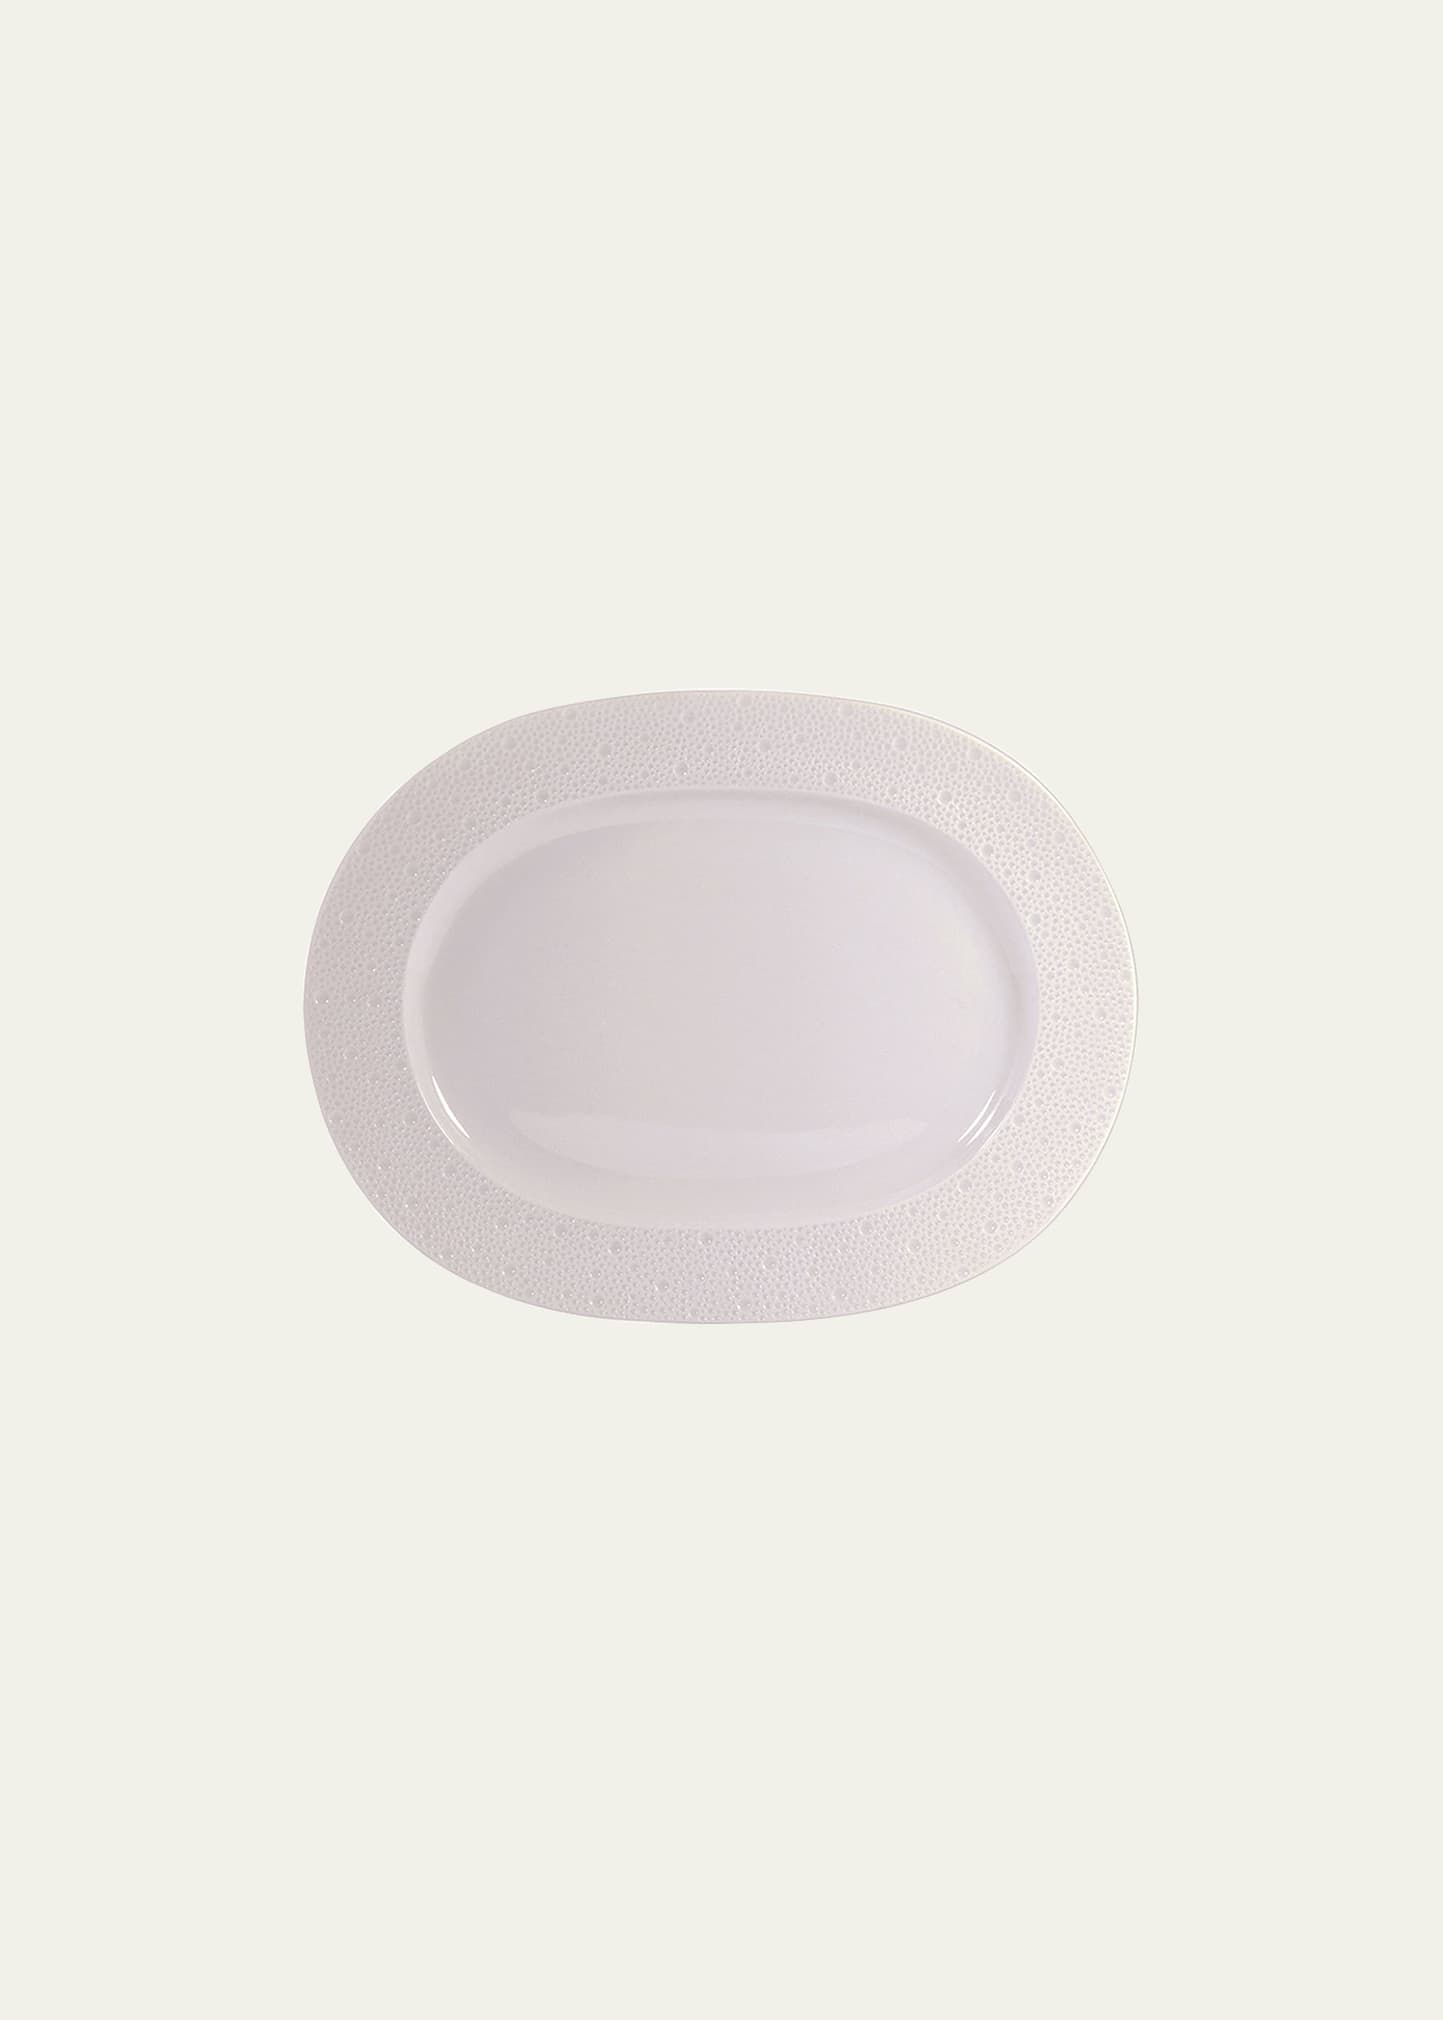 Ecume White Oval Platter, 14"